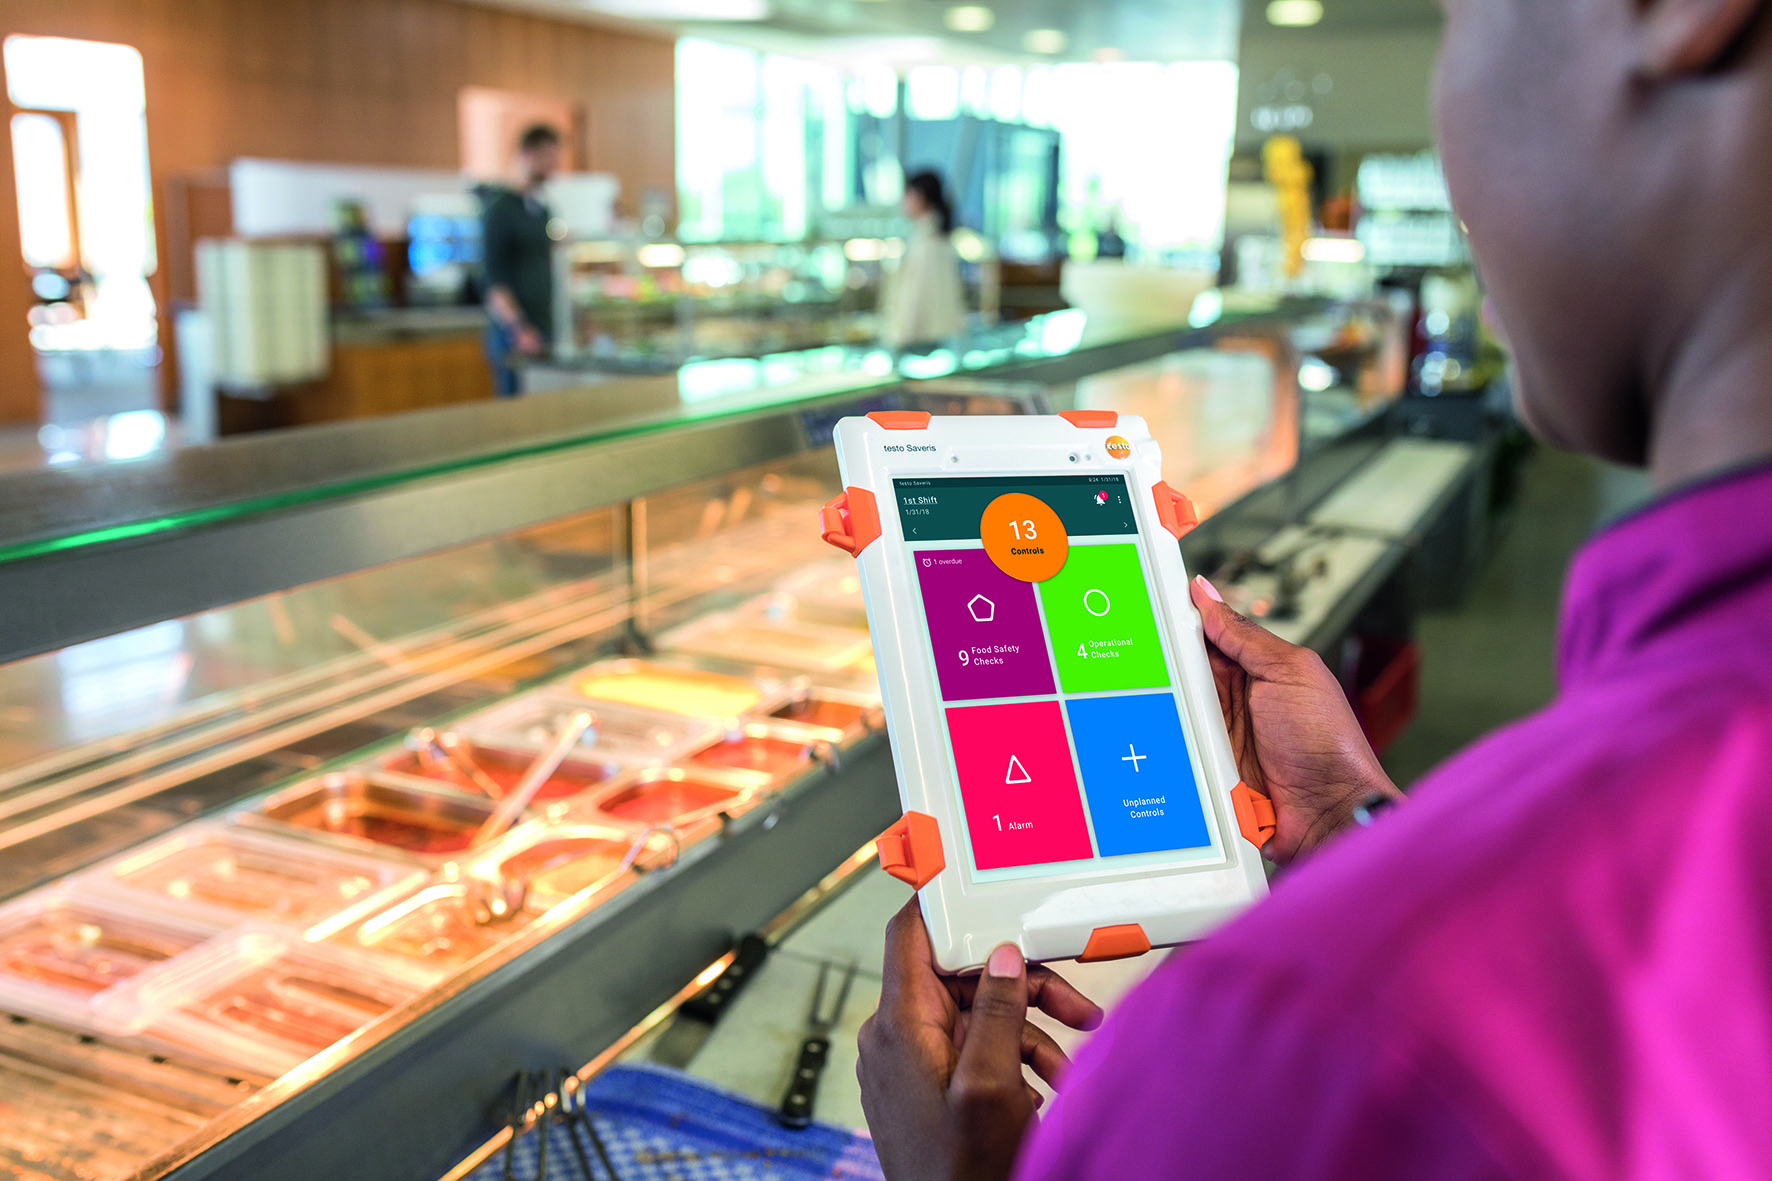 I vantaggi di un sistema digitale per la sicurezza alimentare per catene di ristorazione e di supermercati